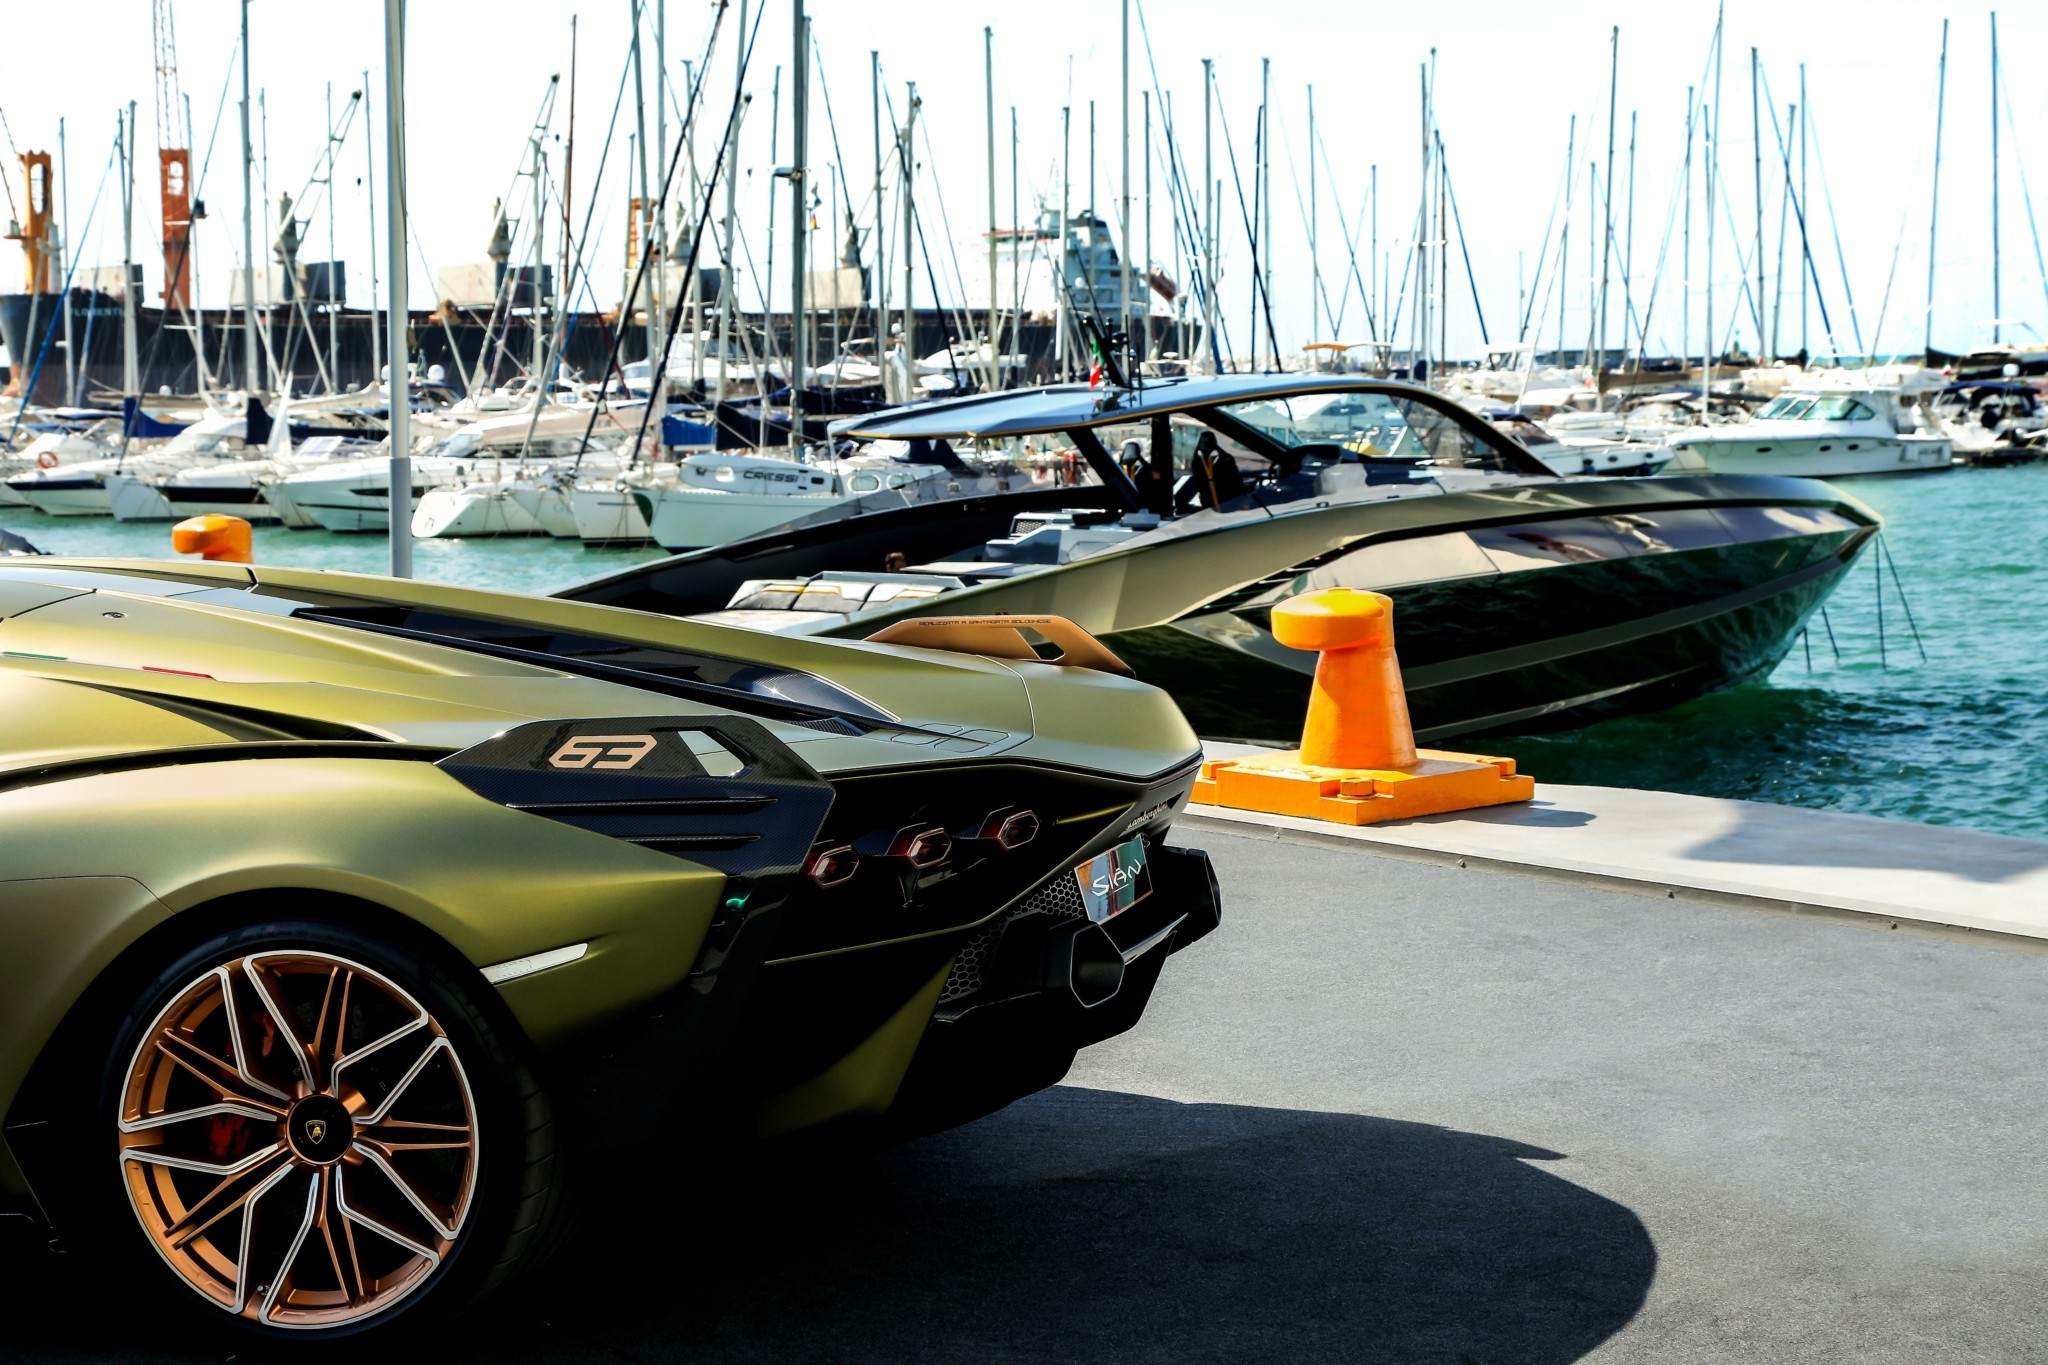 Το απίστευτο γιοτ της Lamborghini – Ένα θαλάσσιο supercar με 4.000 ίππους